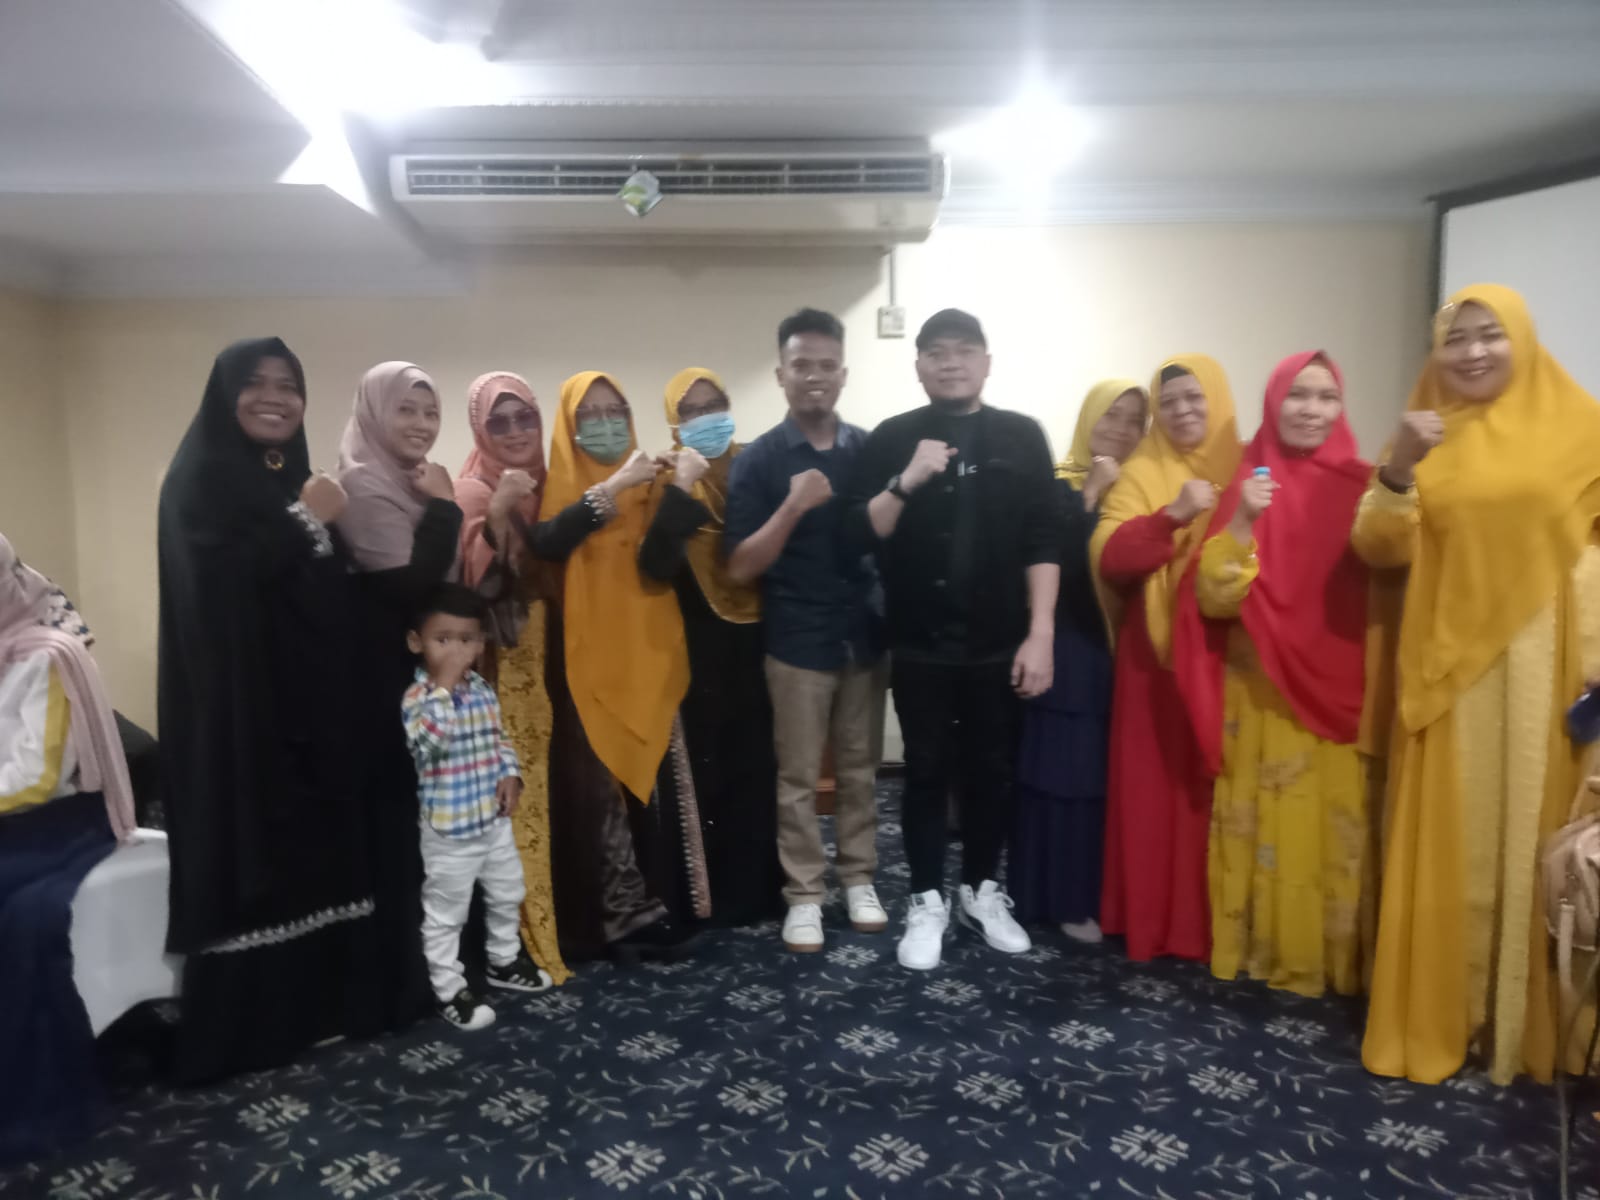 Ikut Seminar Solusi Syariah Di Medan, Peserta Asal Siantar Ingin Lepas Dari Jeratan Riba Dan Menjemput Impiannya